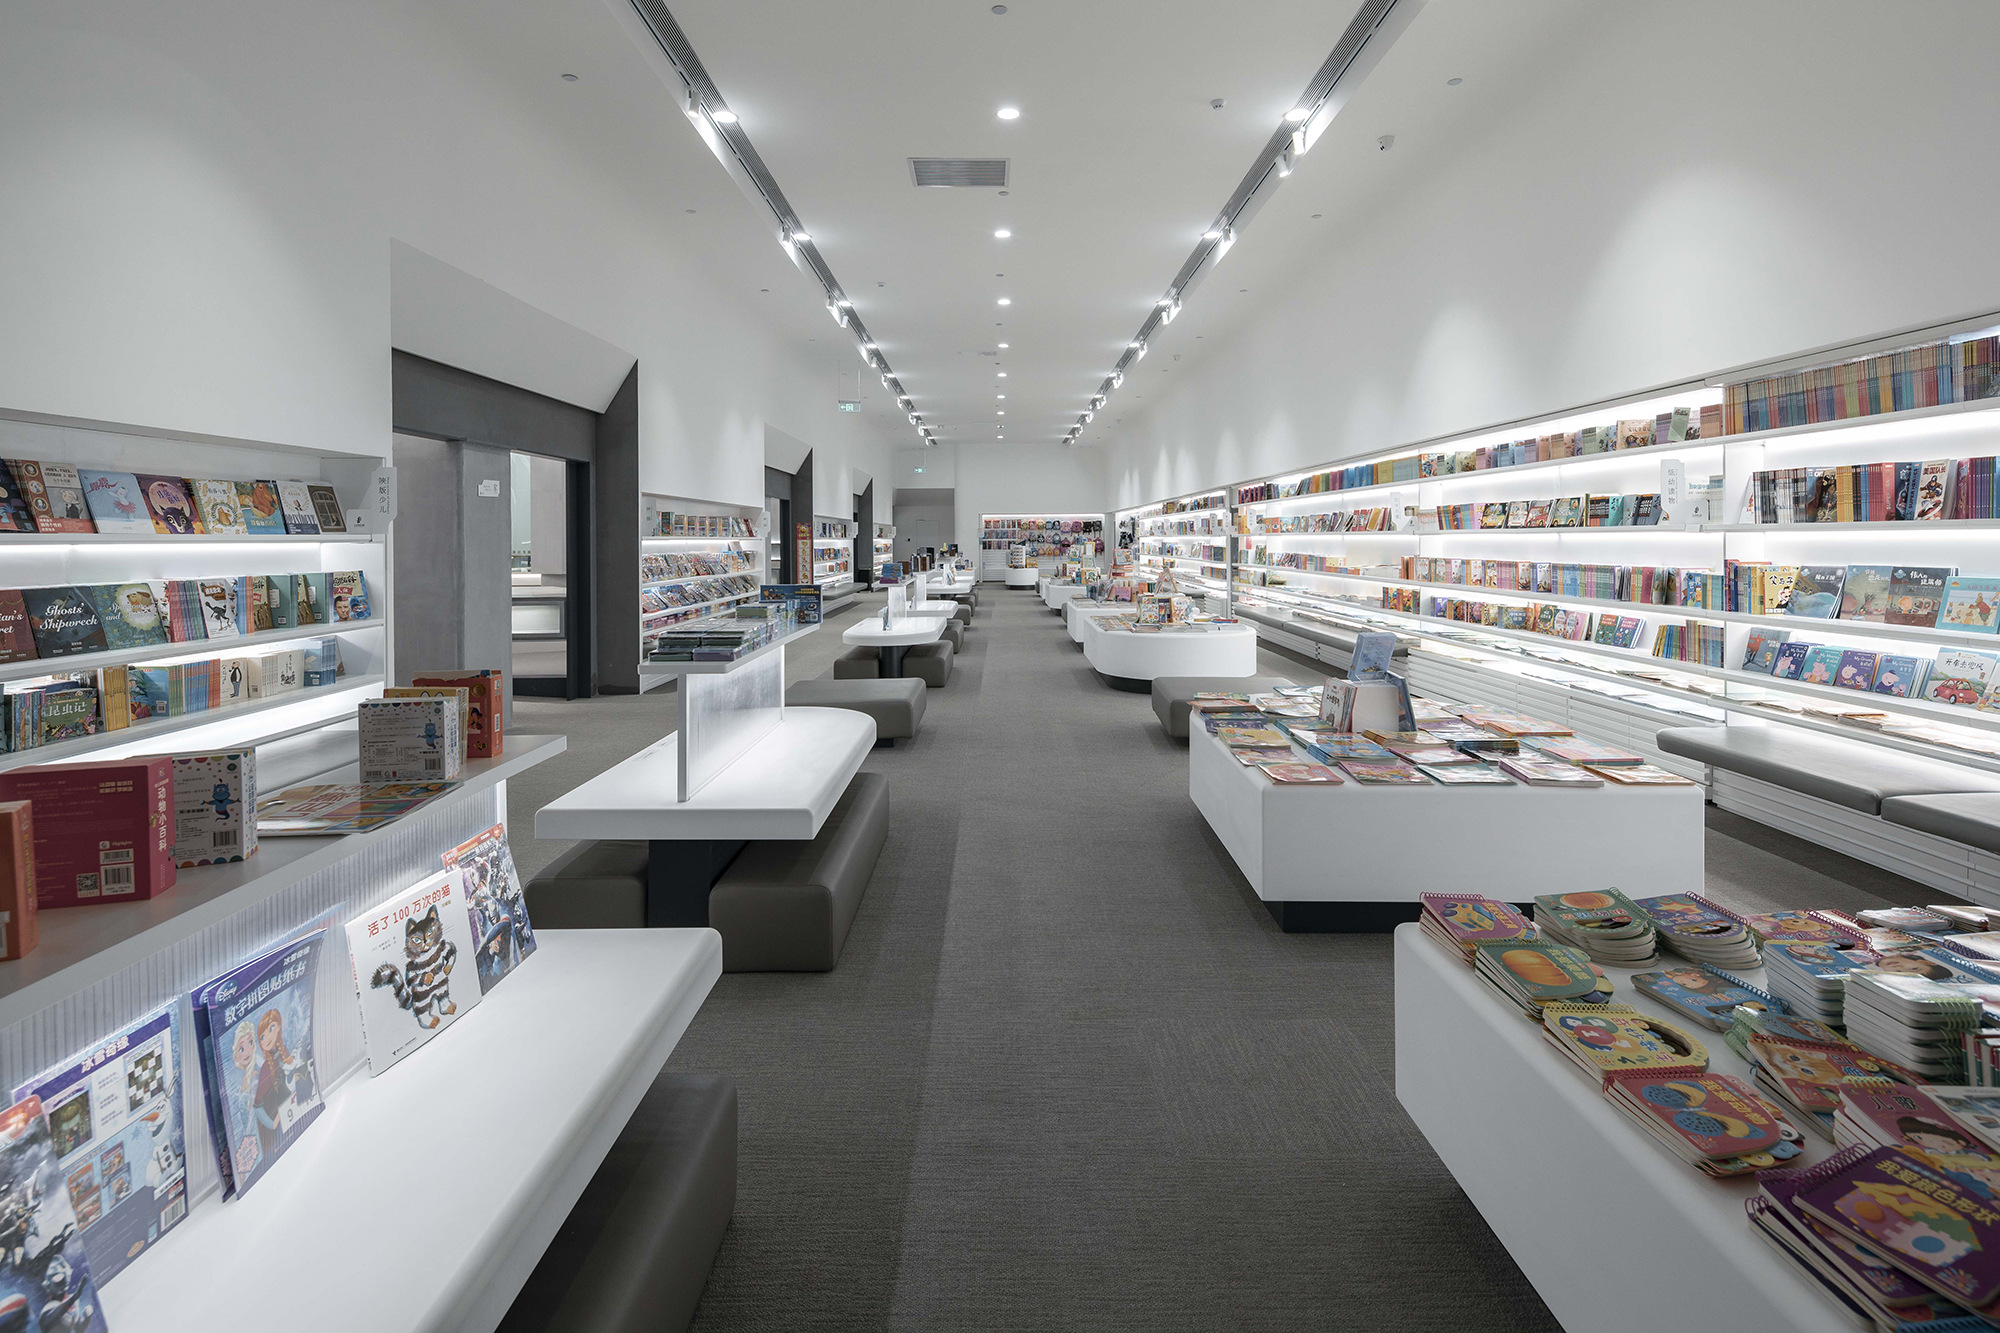 图片[8]|丰东鄂邦书店与图书馆|ART-Arrakis | 建筑室内设计的创新与灵感